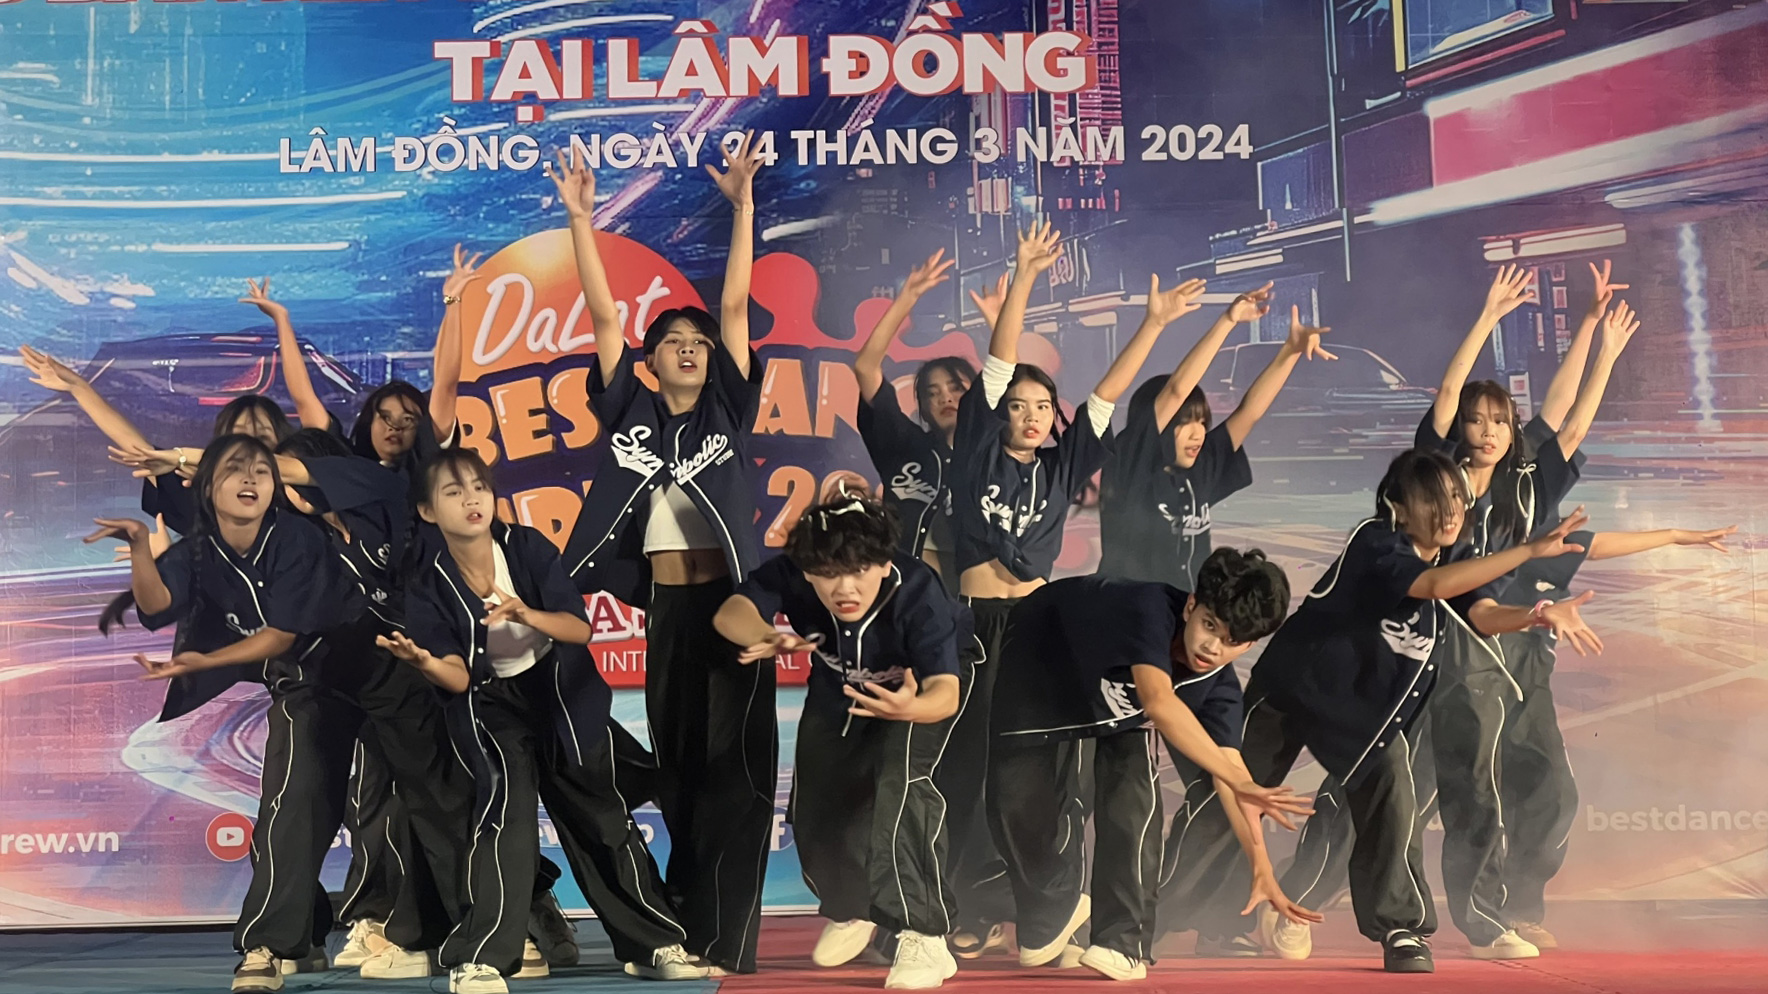 Nhóm Rex - Lab Crew giành giải Nhất vòng bán kết Bảng Phong trào mở rộng cuộc thi Dalat Best Dance Crew 2024 - Hoa Sen Home International Cup